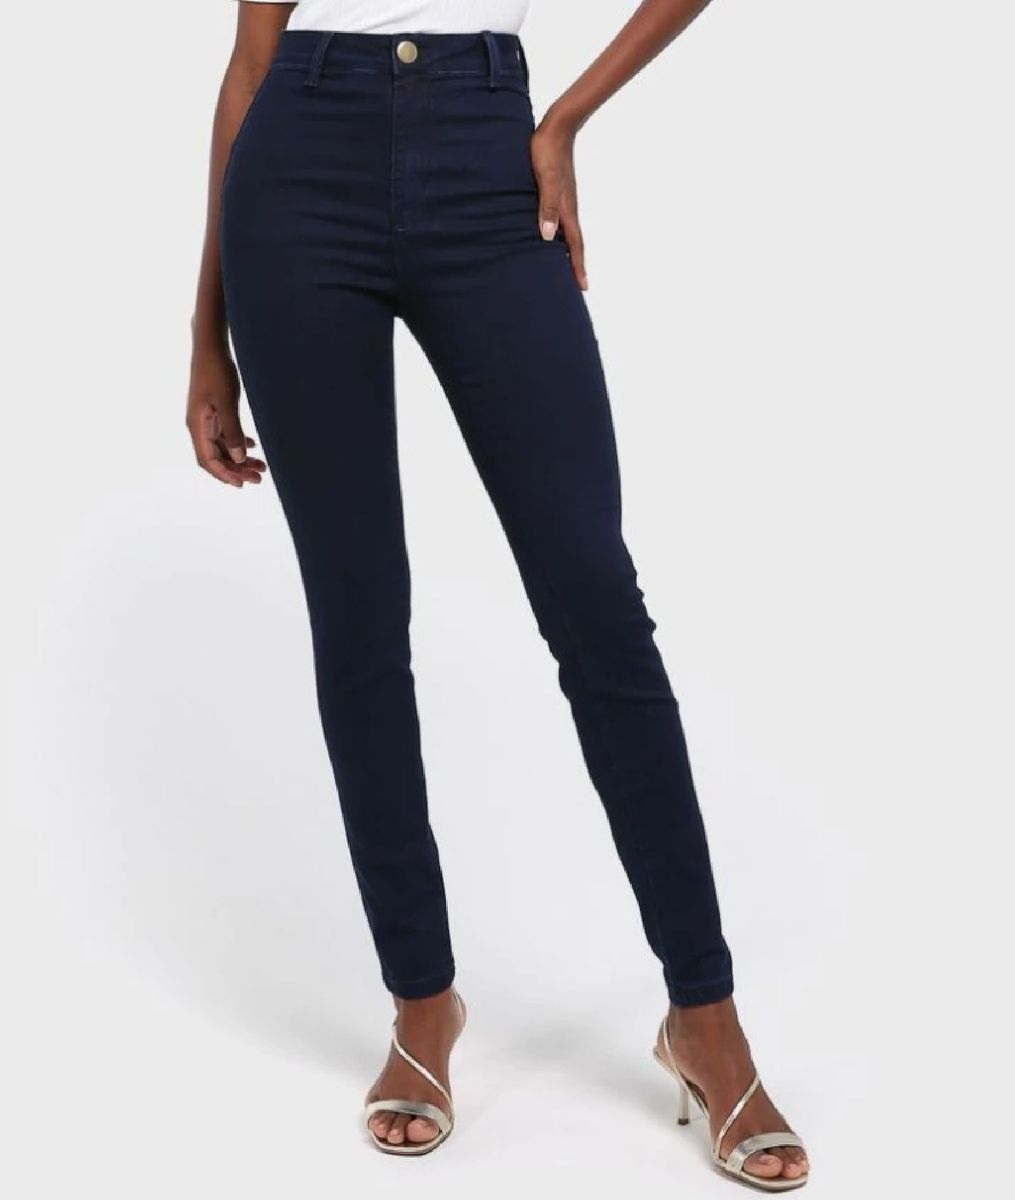 calça jeans feminina lojas riachuelo